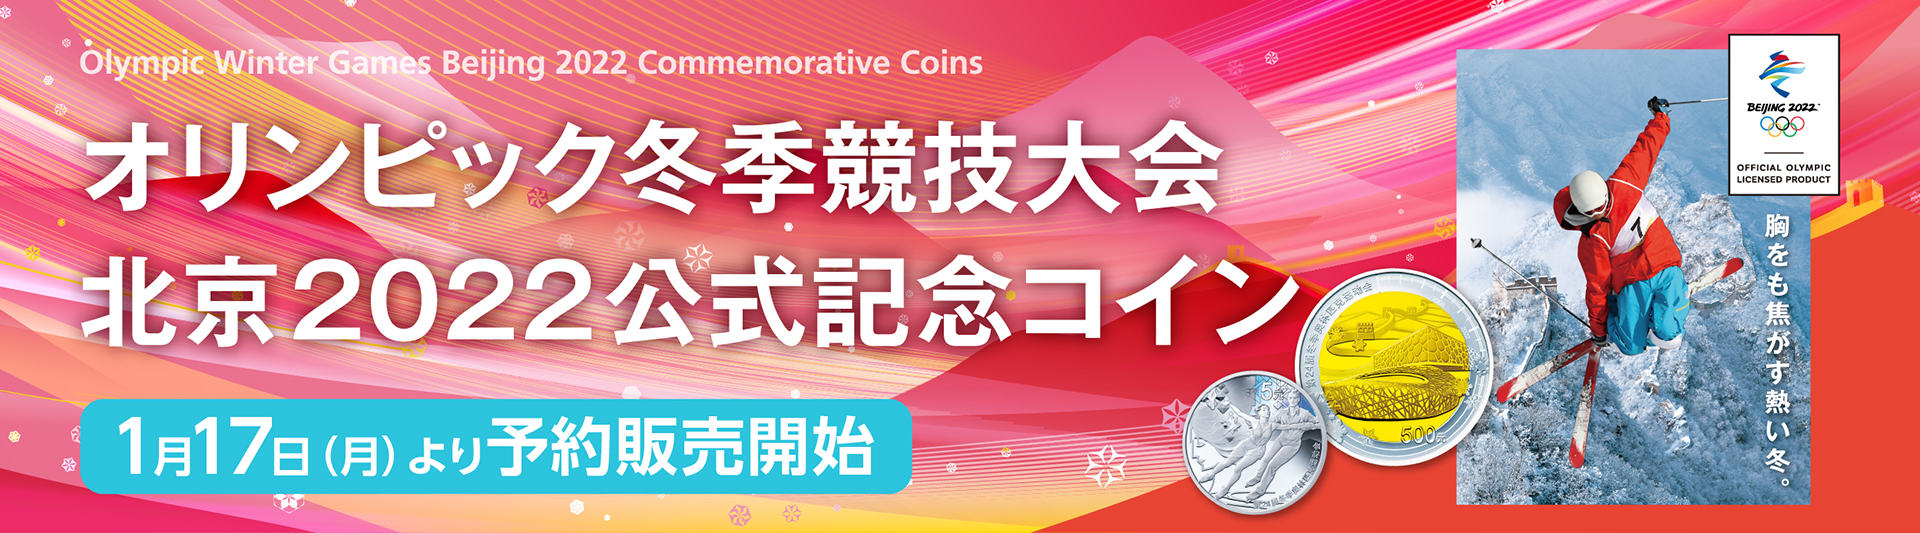 オリンピック冬季競技大会 北京2022公式記念コイン記念コイン